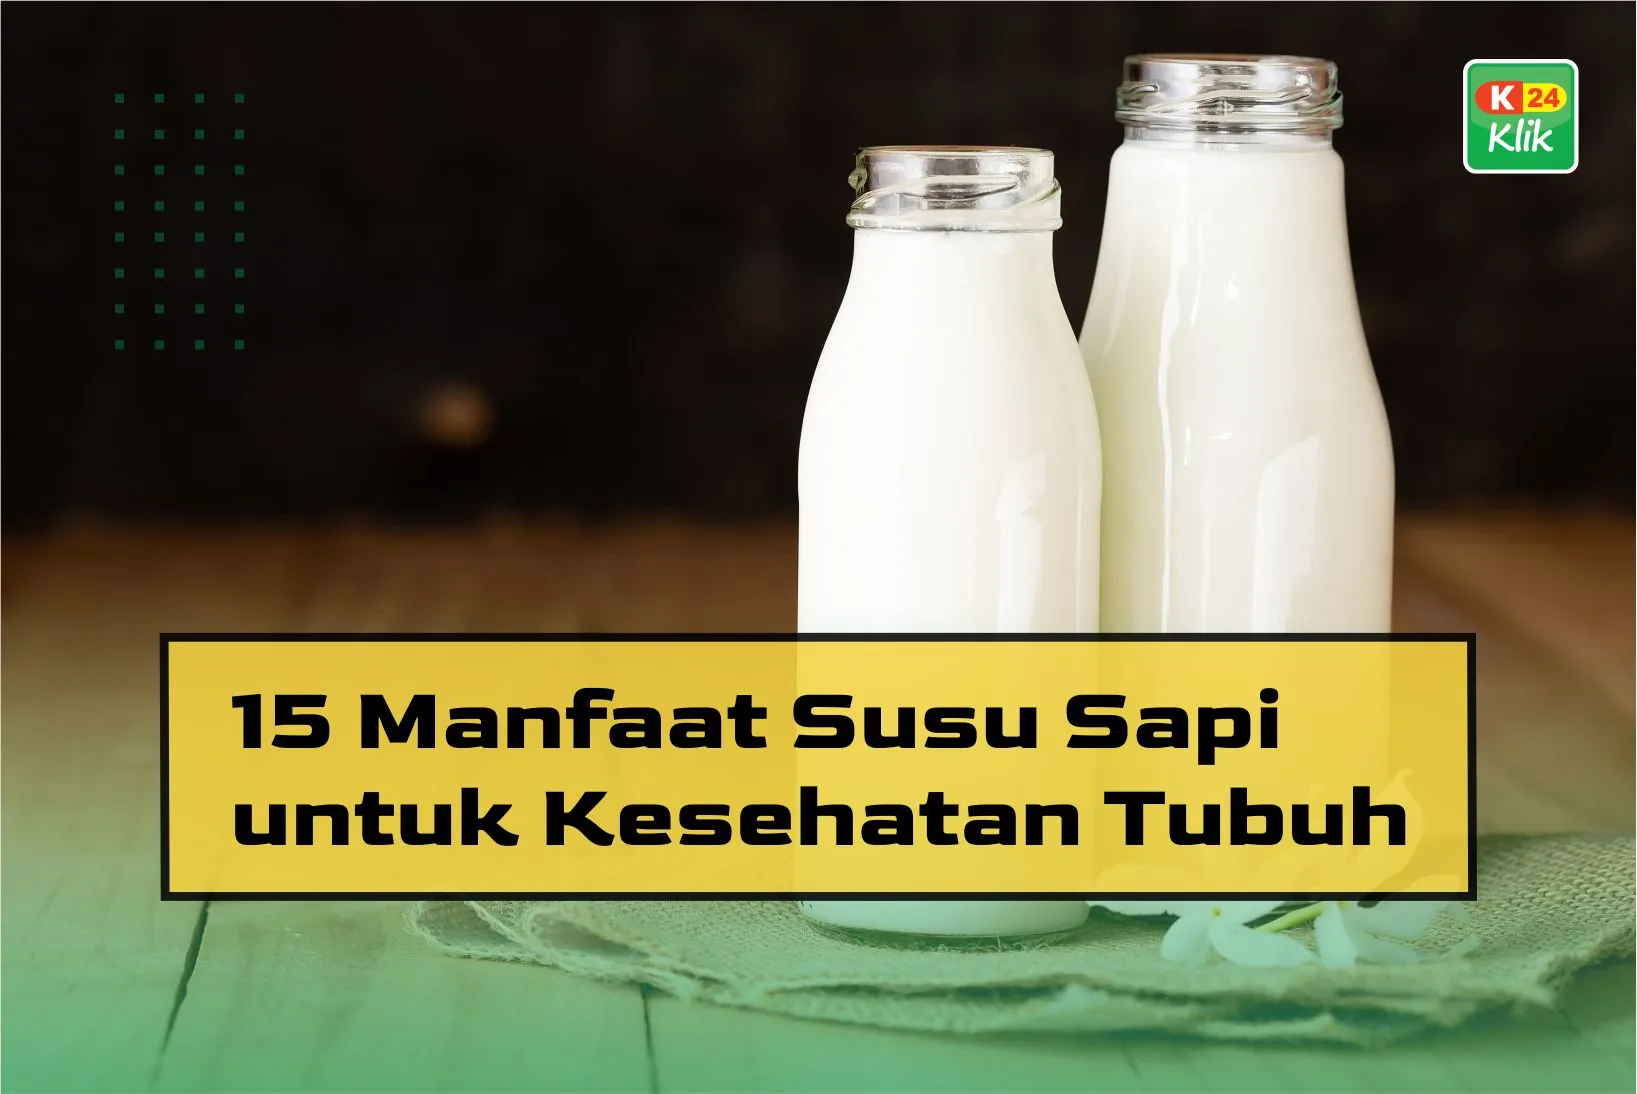 manfaat susu sapi untuk kesehatan tubuh